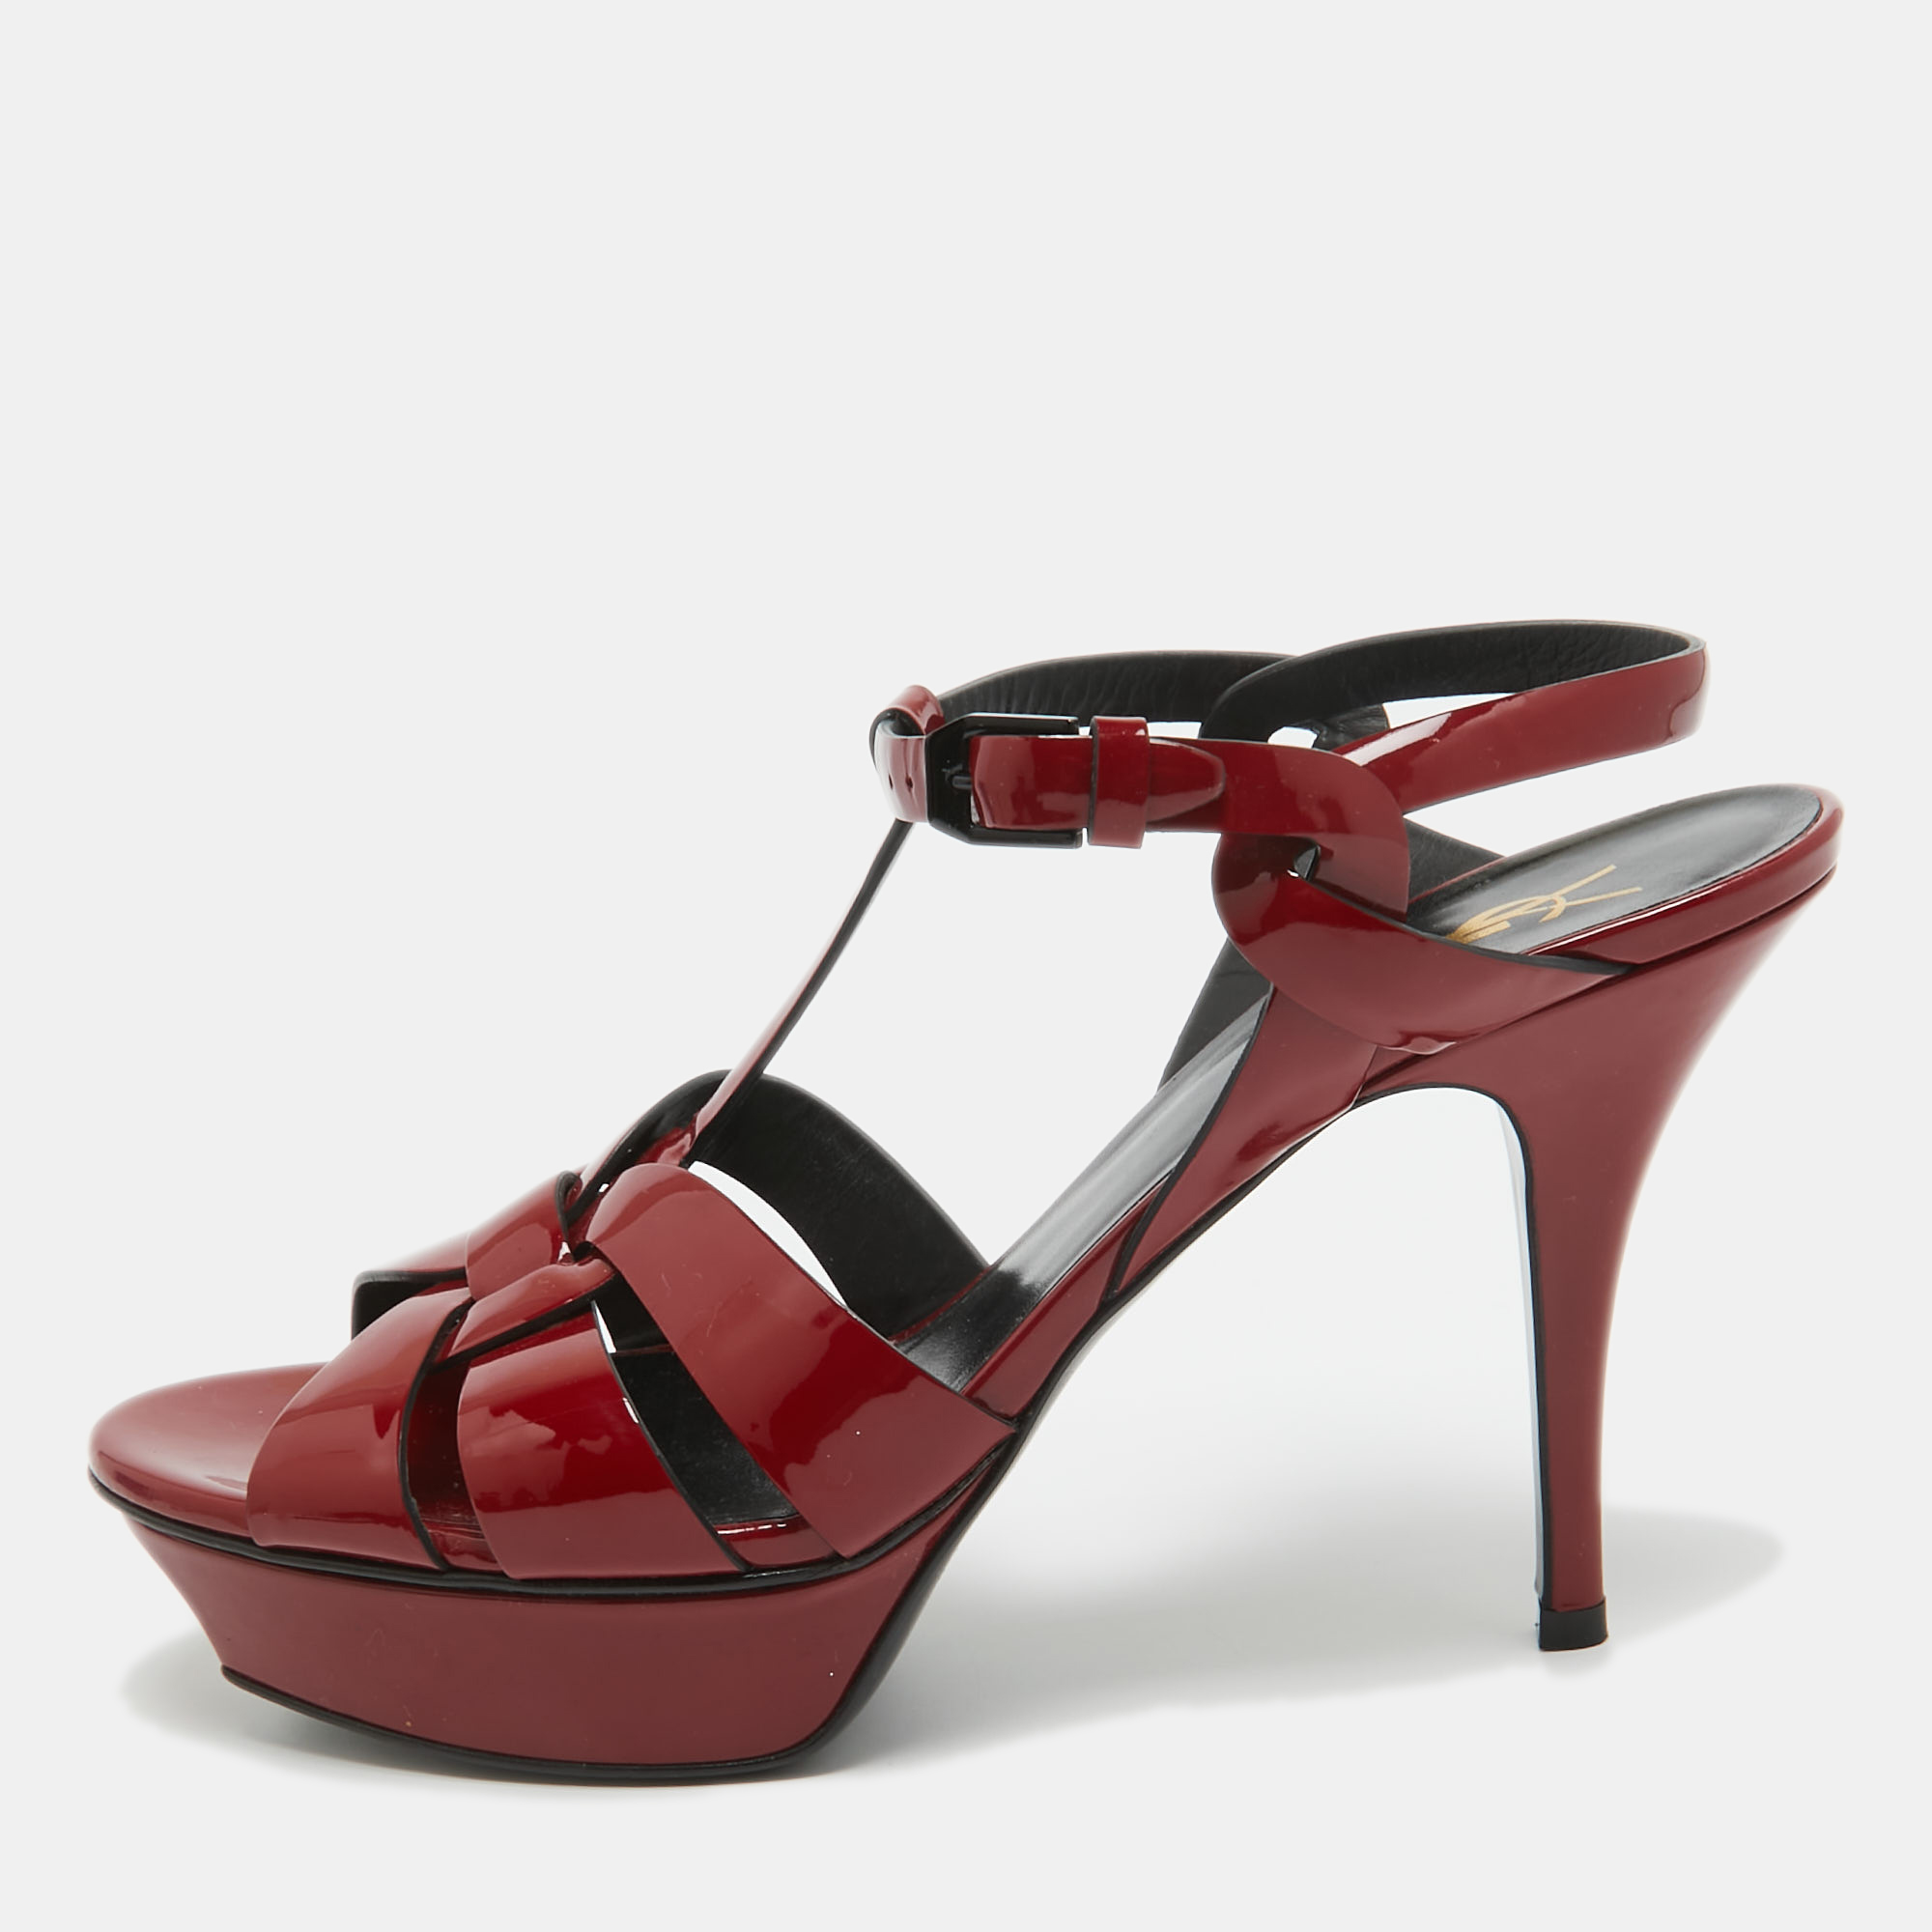 Saint laurent paris saint laurent dark red patent leather tribute sandals size 40